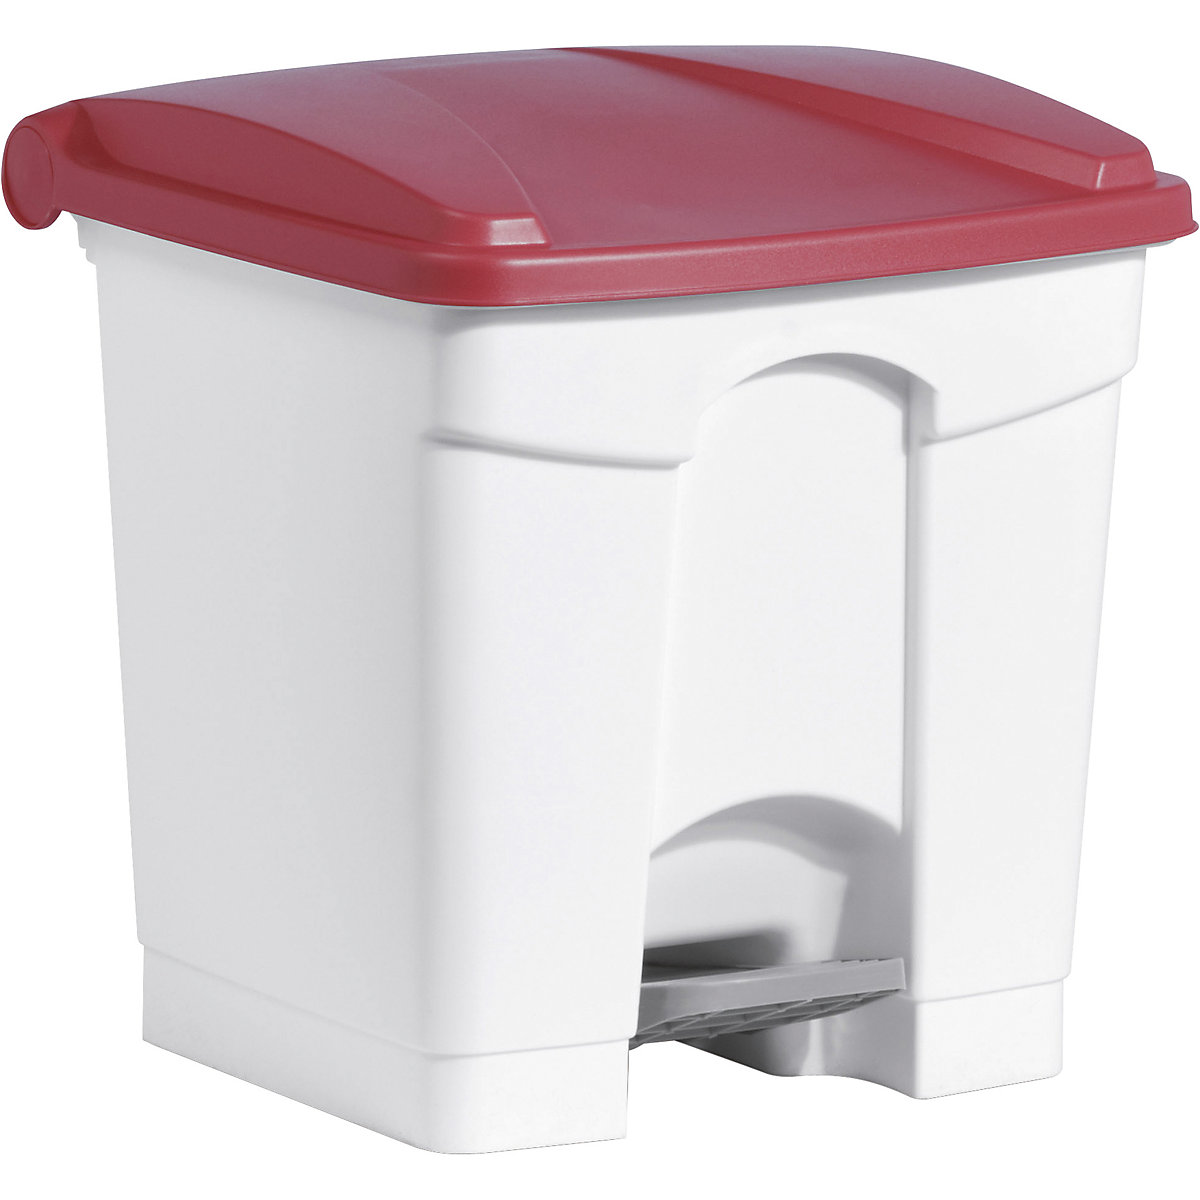 Koš za odpadke s pedalom – helit, prostornina 30 l, ŠxVxG 410 x 440 x 400 mm, bel, rdeč pokrov-6